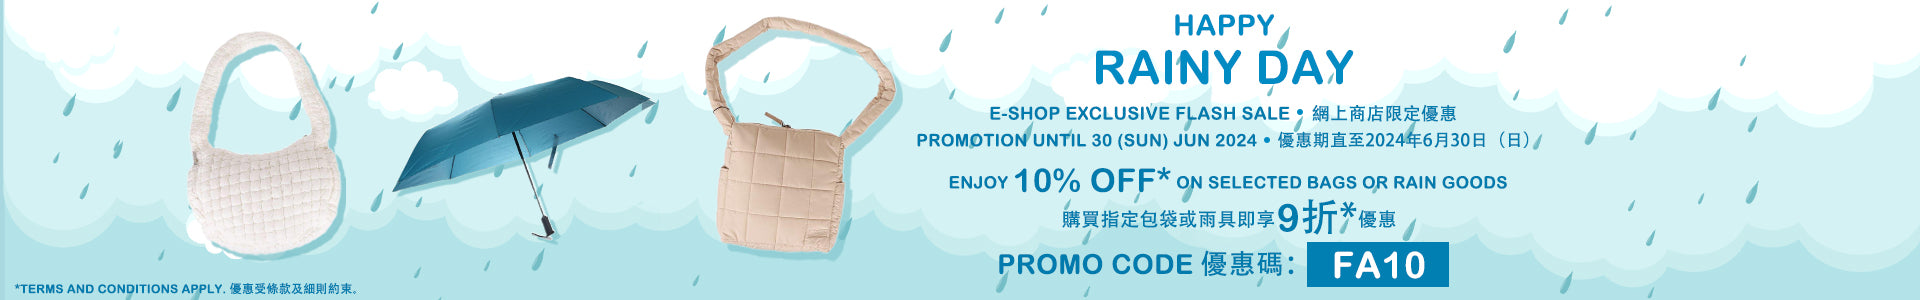 E-Shop Exclusive Flash Sale: Bags & Rain Goods - 10% Off